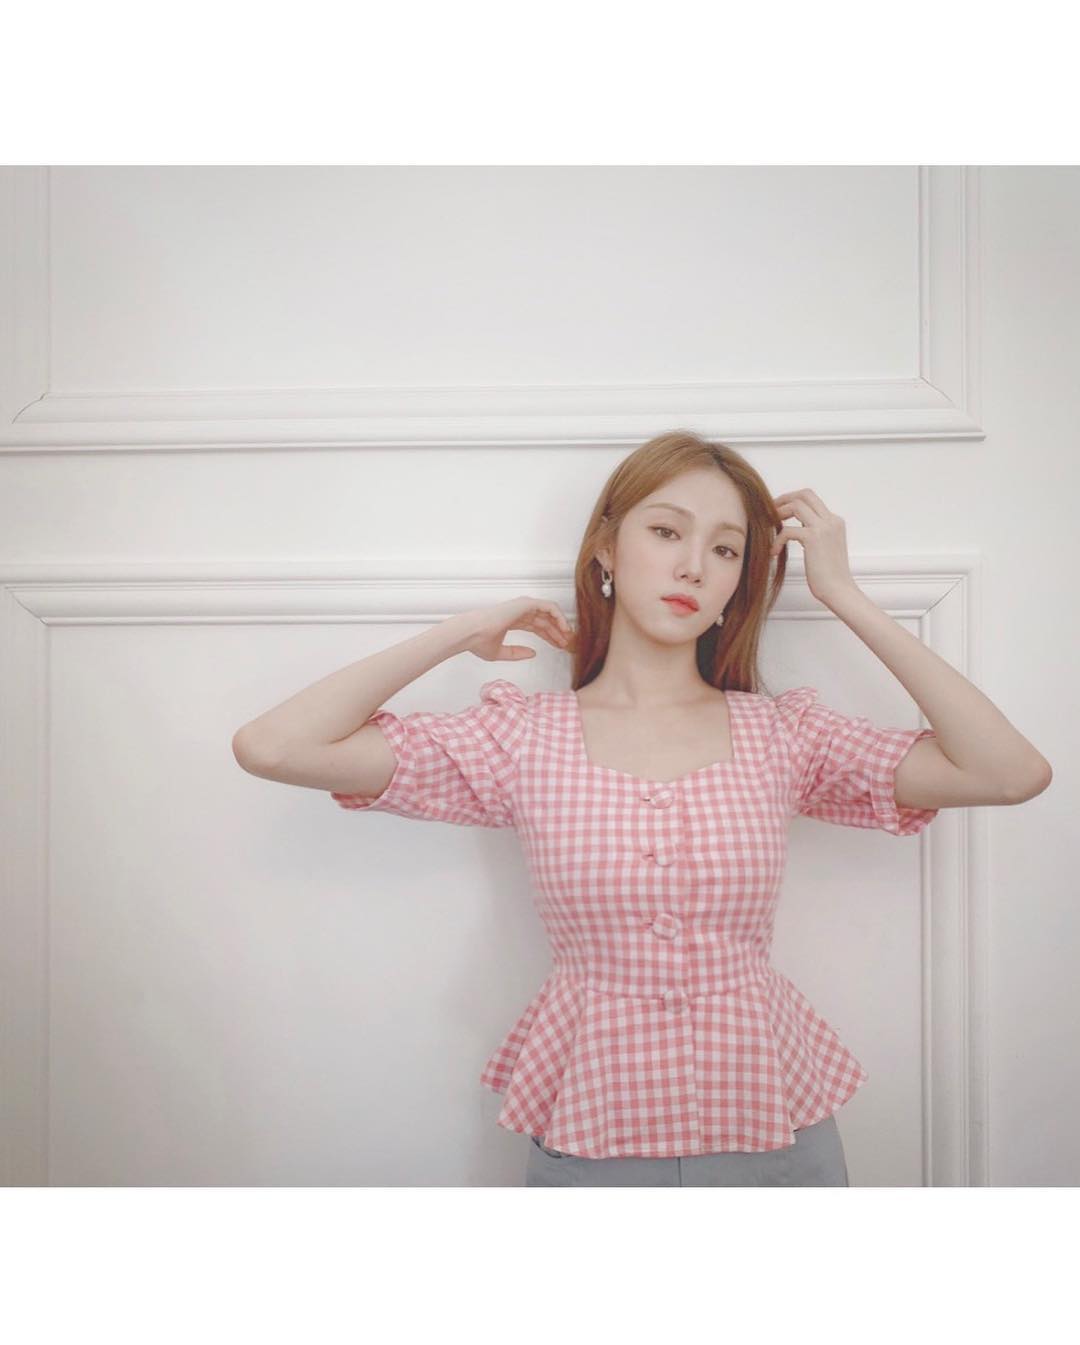 lee sung kyung mặc áo màu hồng thạch anh rose quartz họa tiết gingham